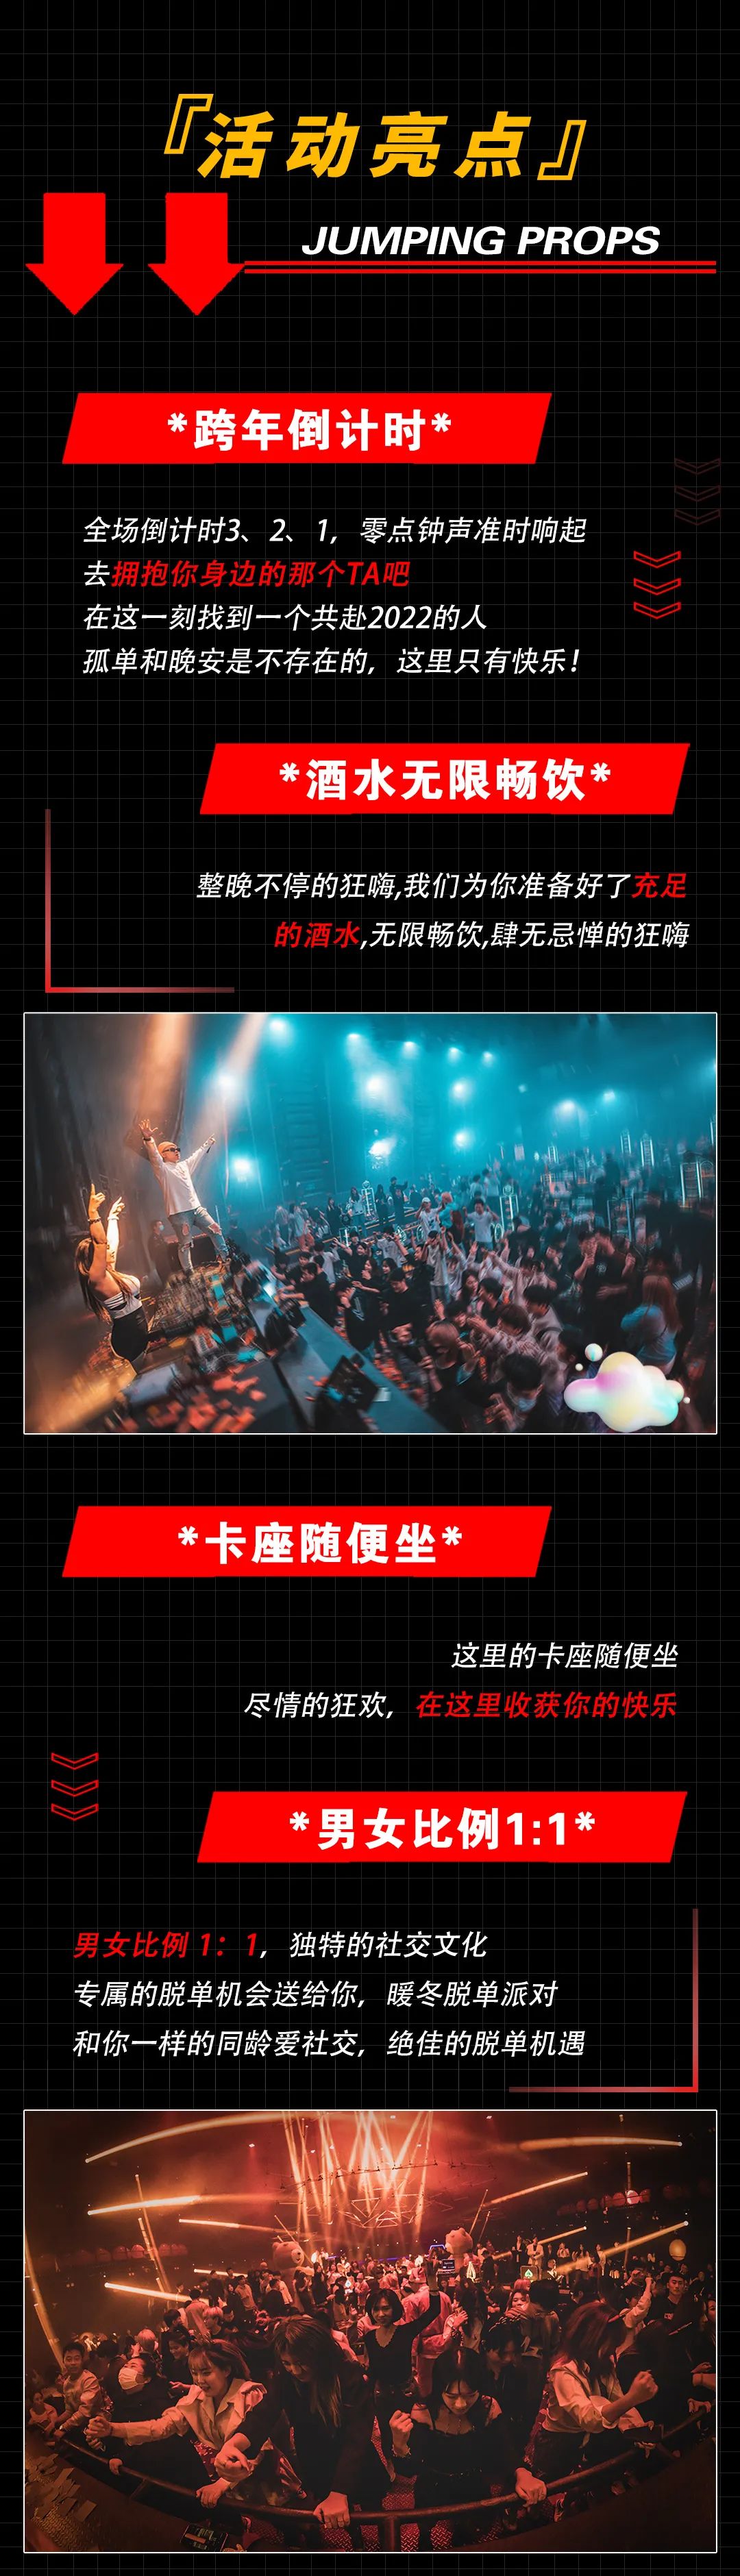 2022YOULO跨年电音派对-杭州站